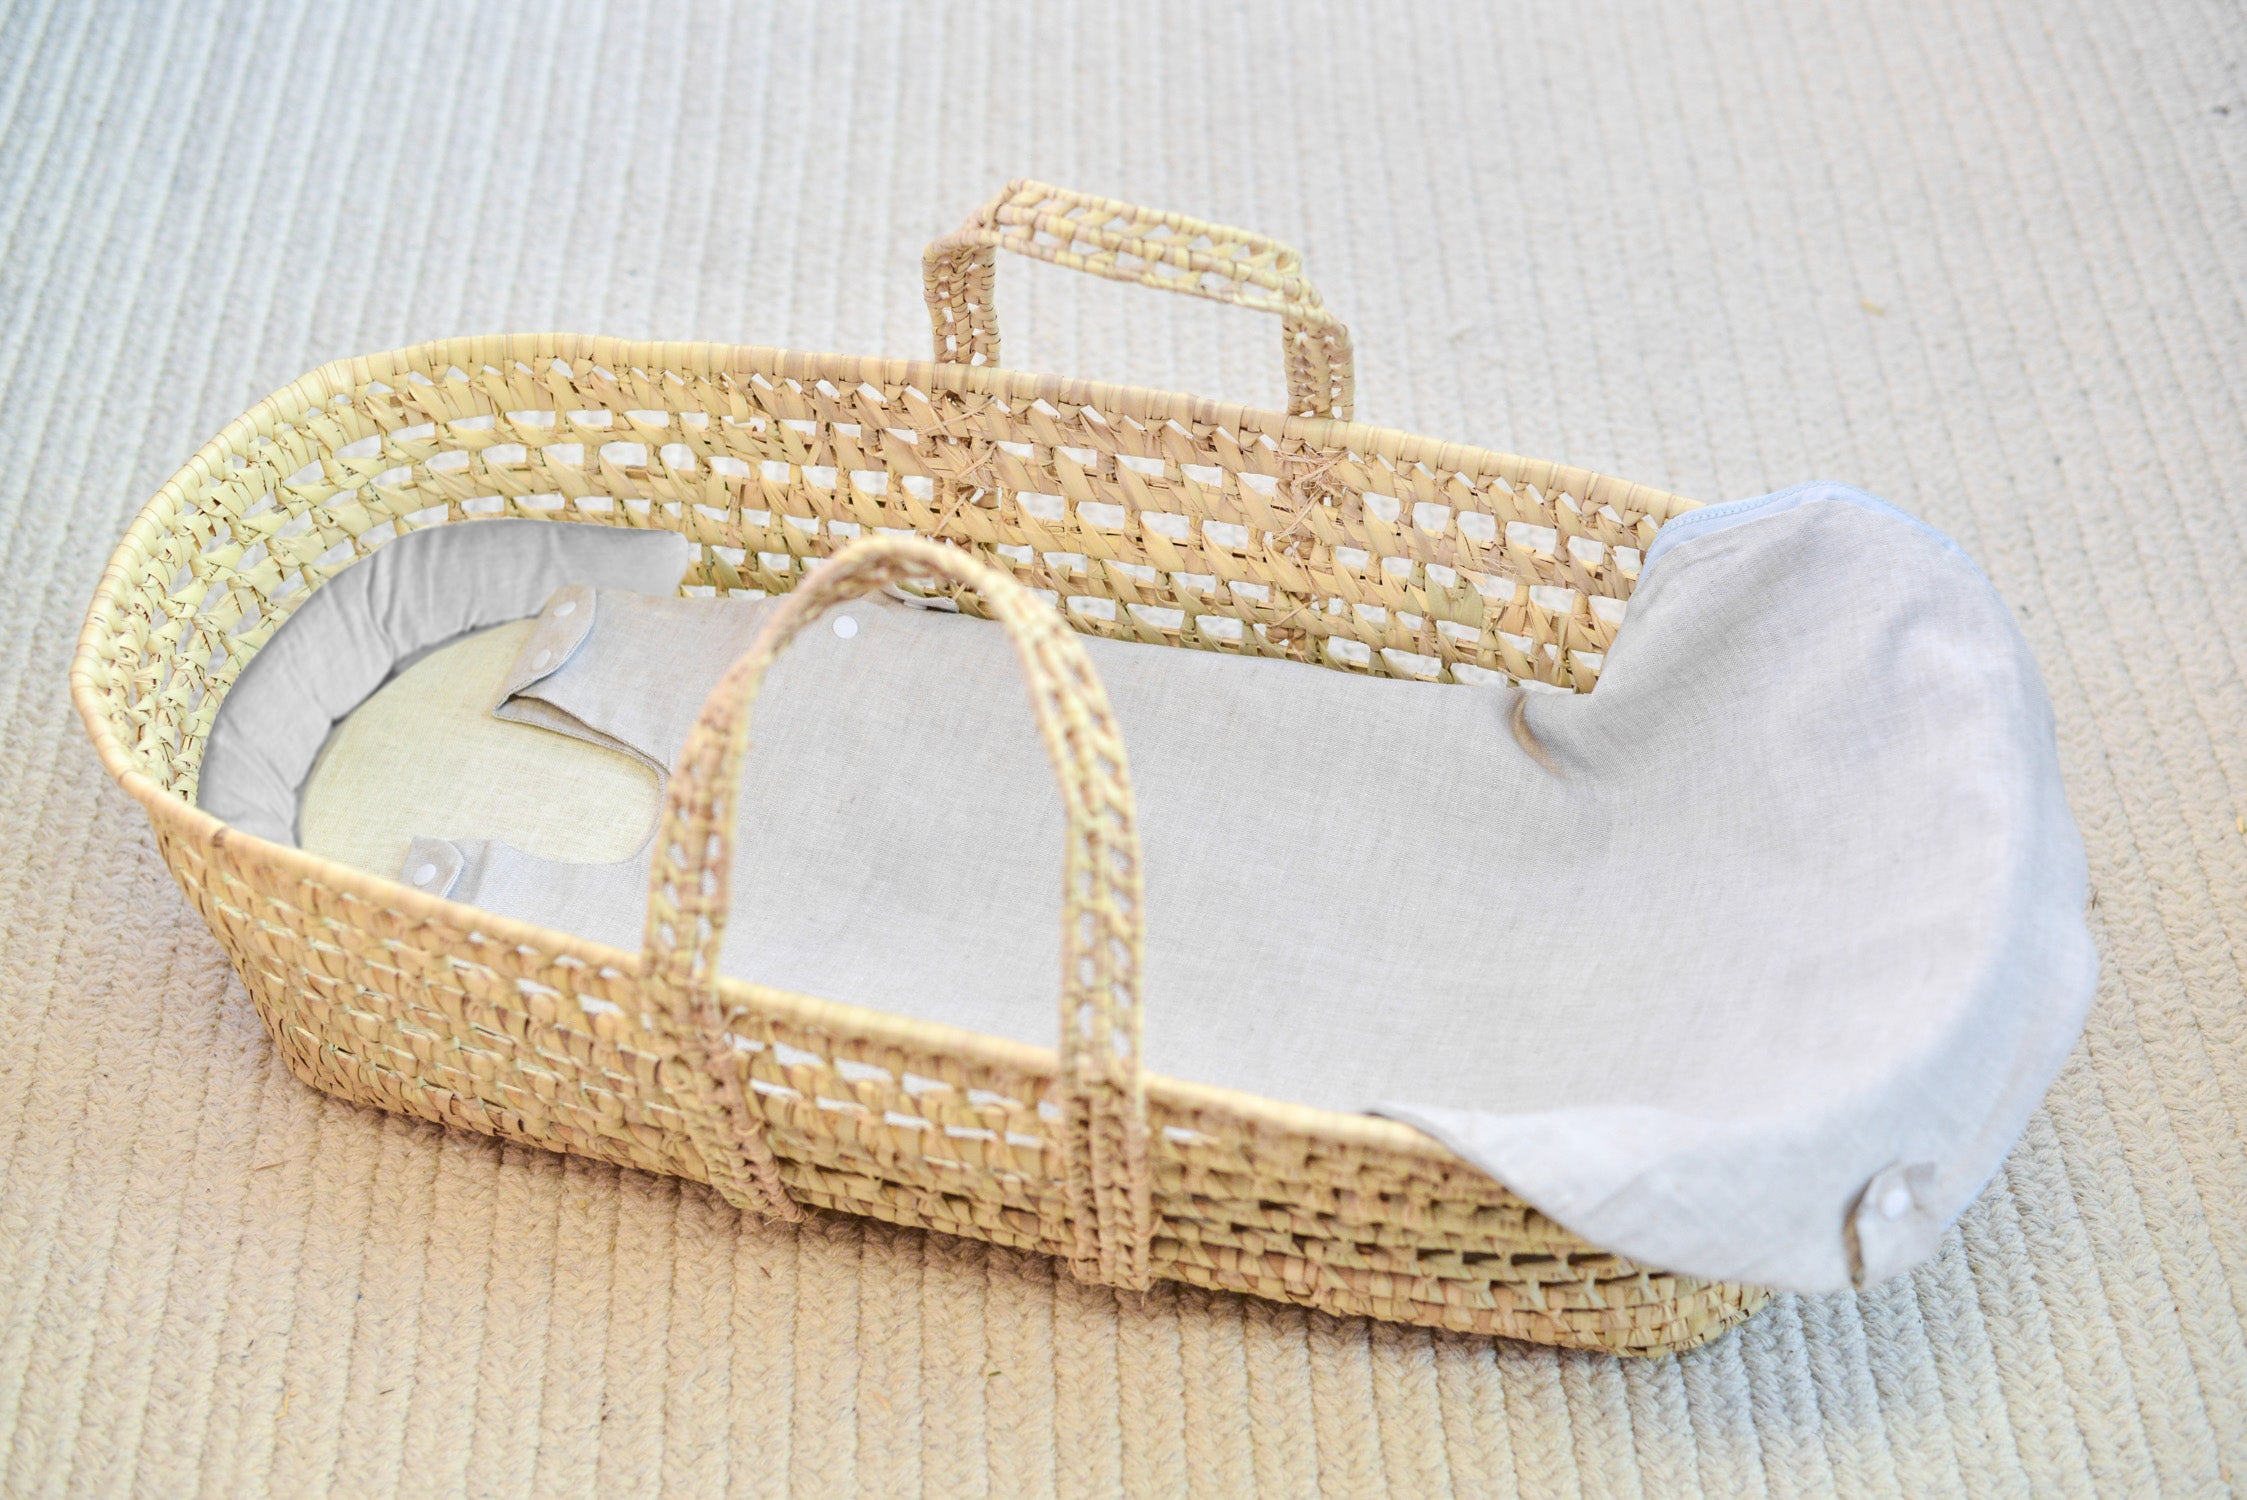 African Baby Moses Baskets w/ Organic Flax Bassinet Mattress & Linen  Bedding